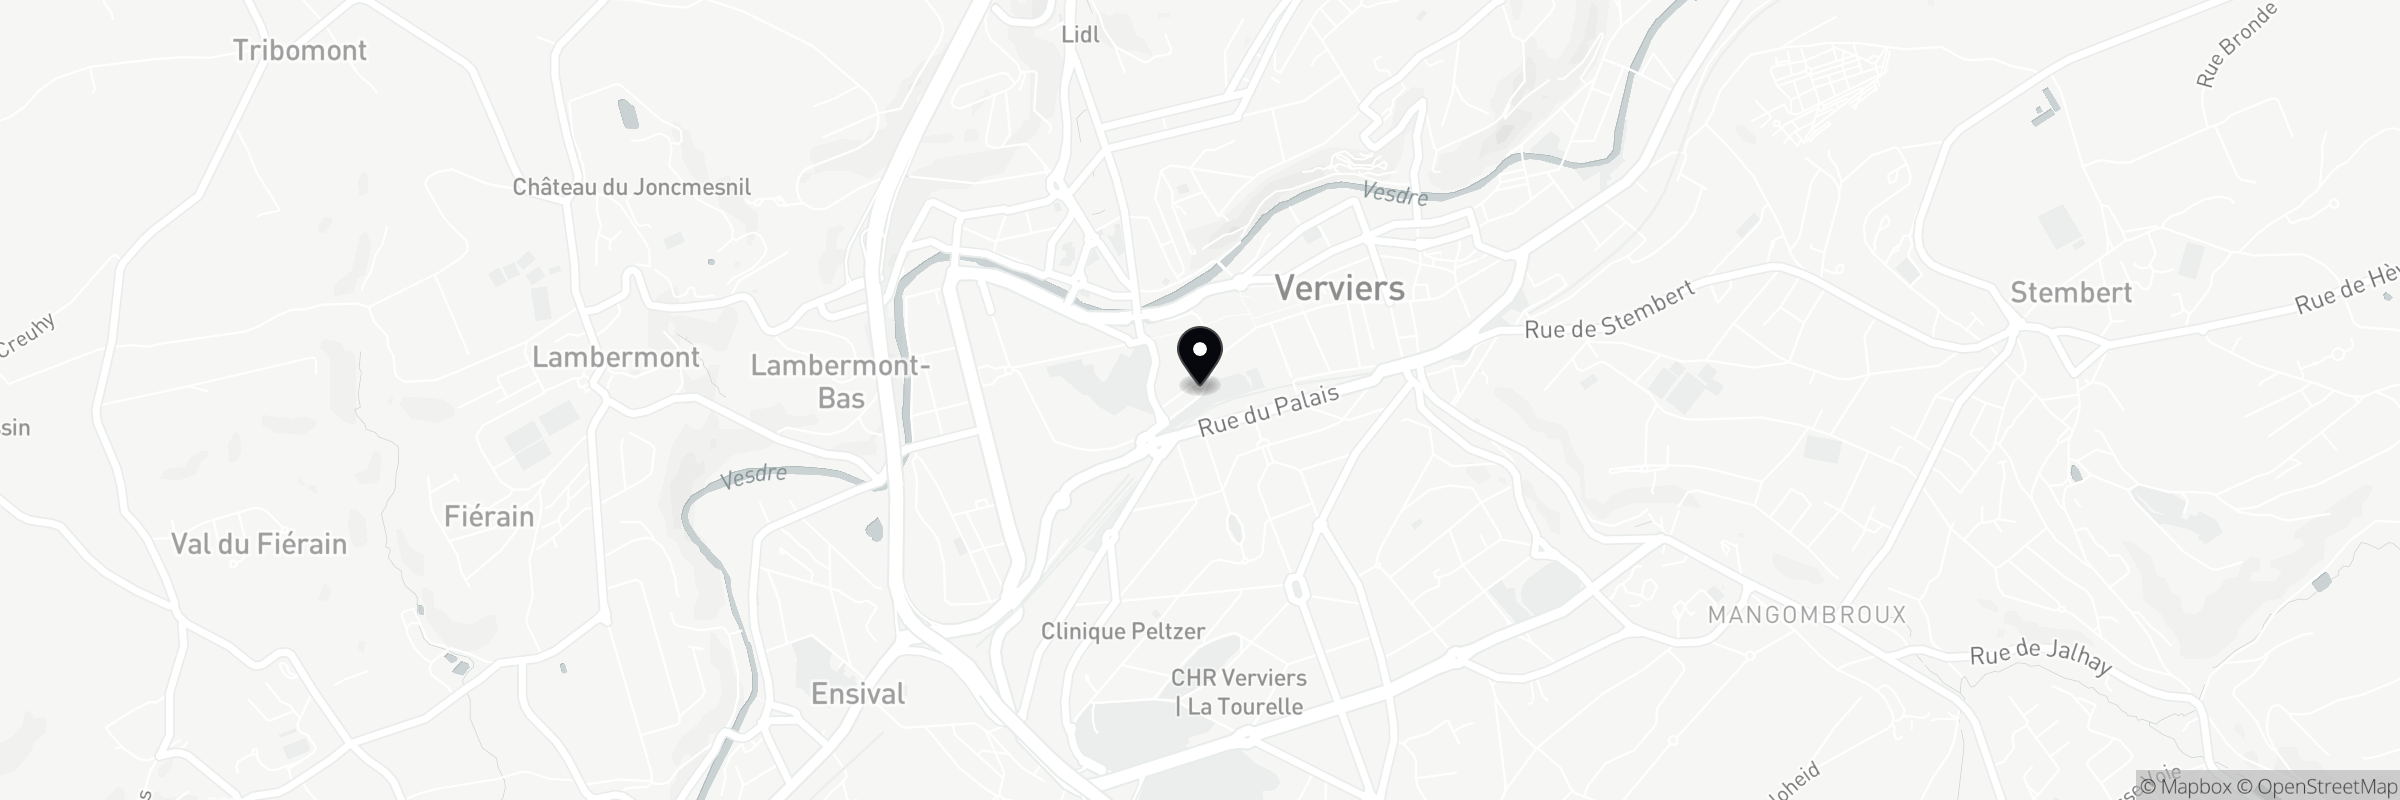 Die Karte zeigt die Adresse von Au Vieux Bourg